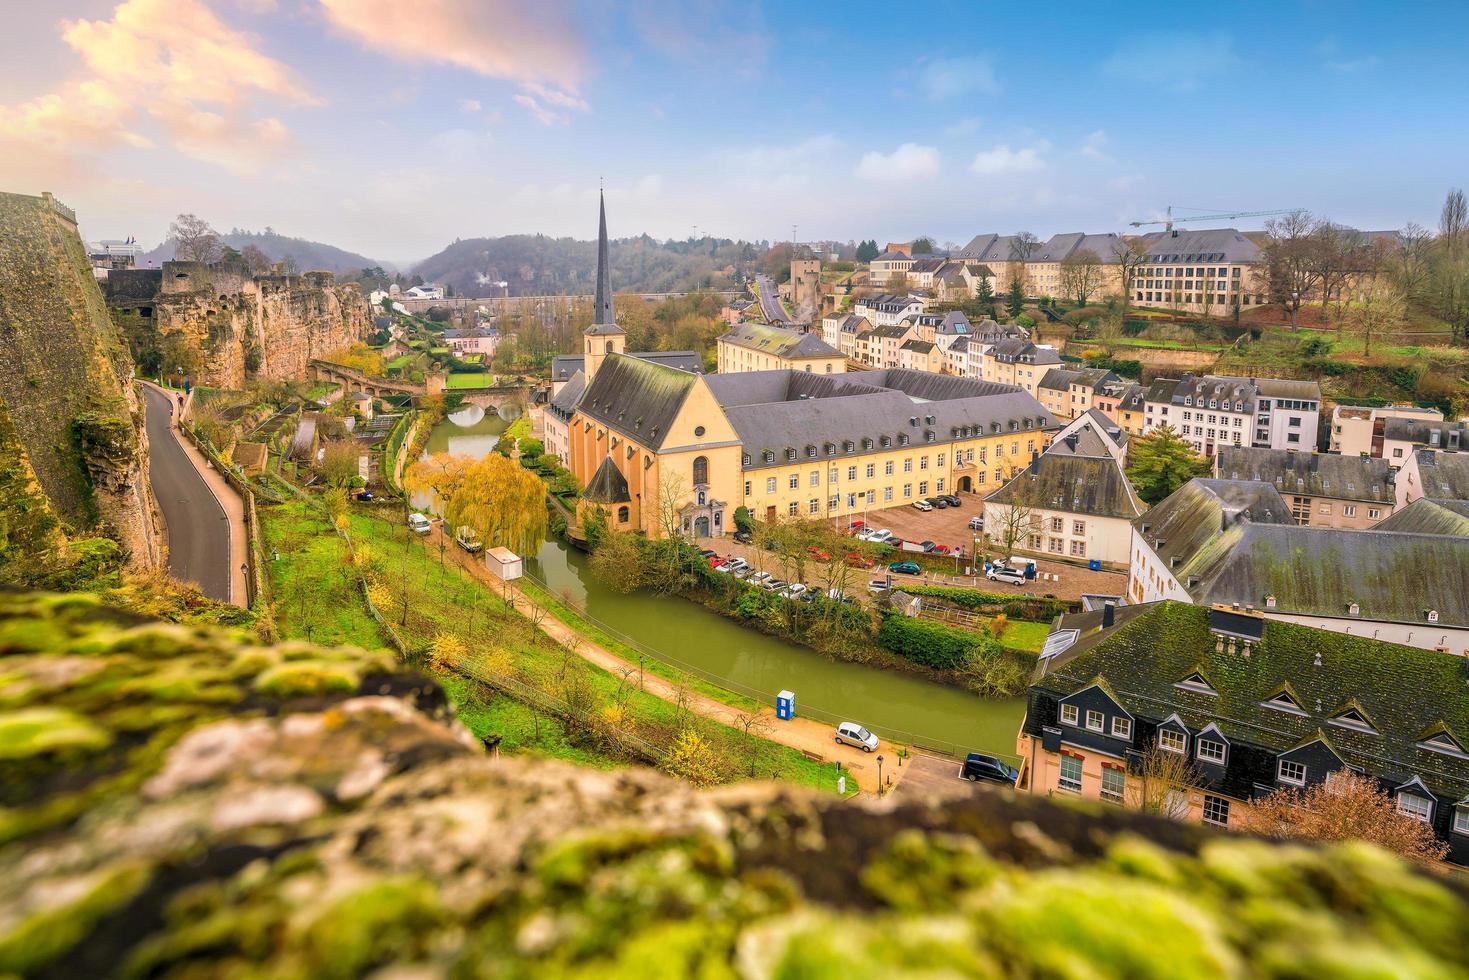 Horizonte del casco antiguo de la ciudad de Luxemburgo desde la vista superior foto